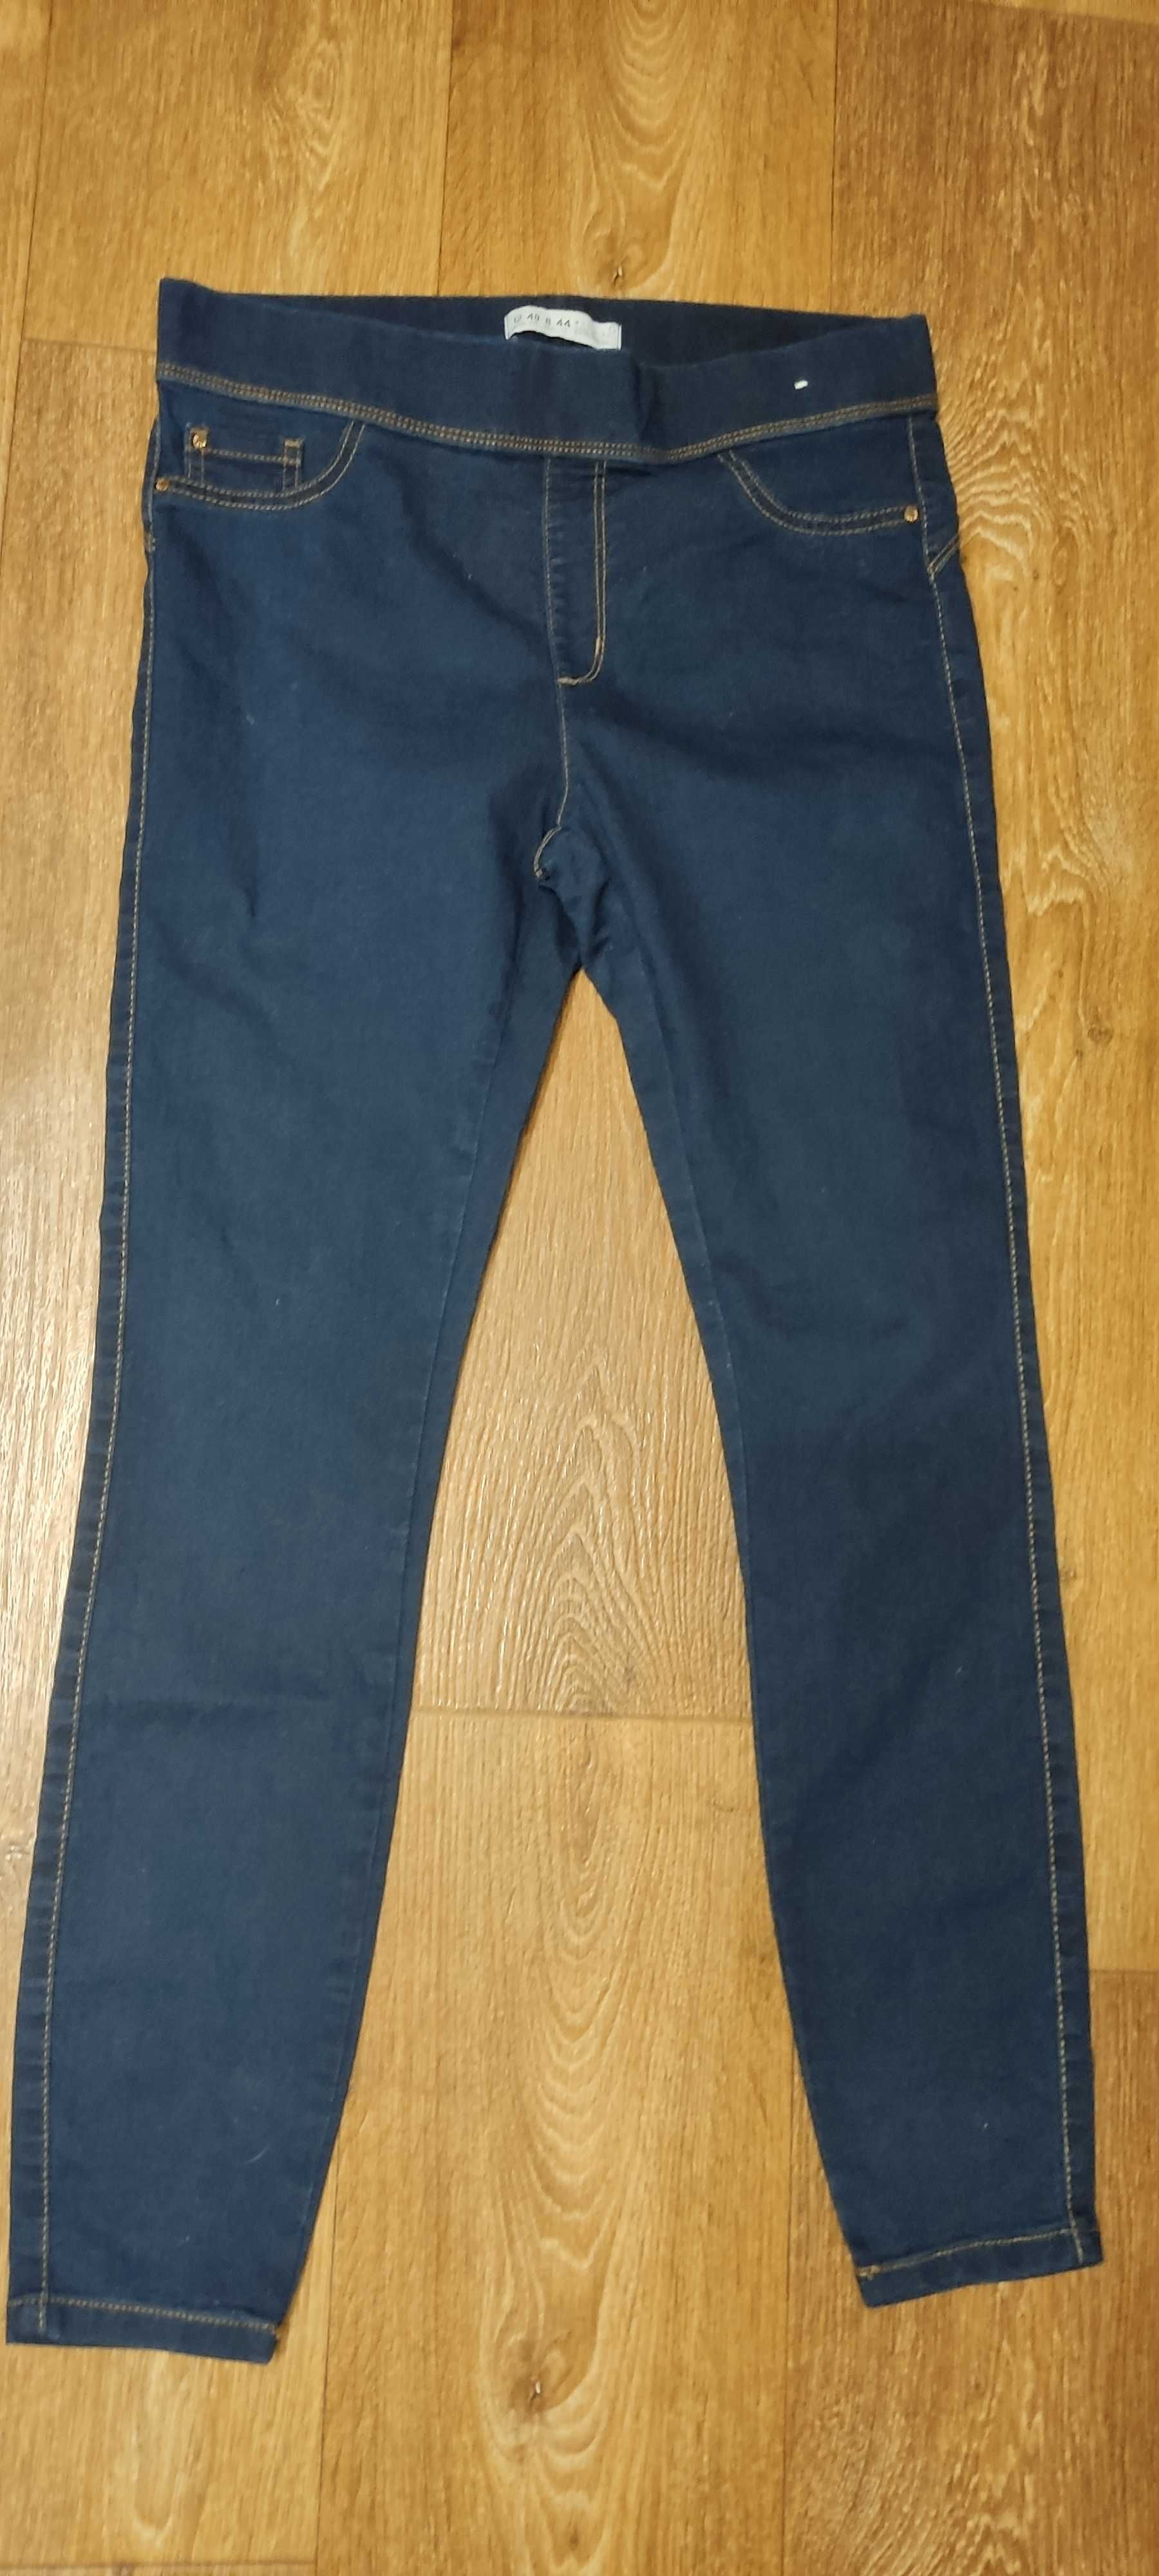 Легінси жіночі (джеггінси, тоненькі джинси) стрейч темно сині